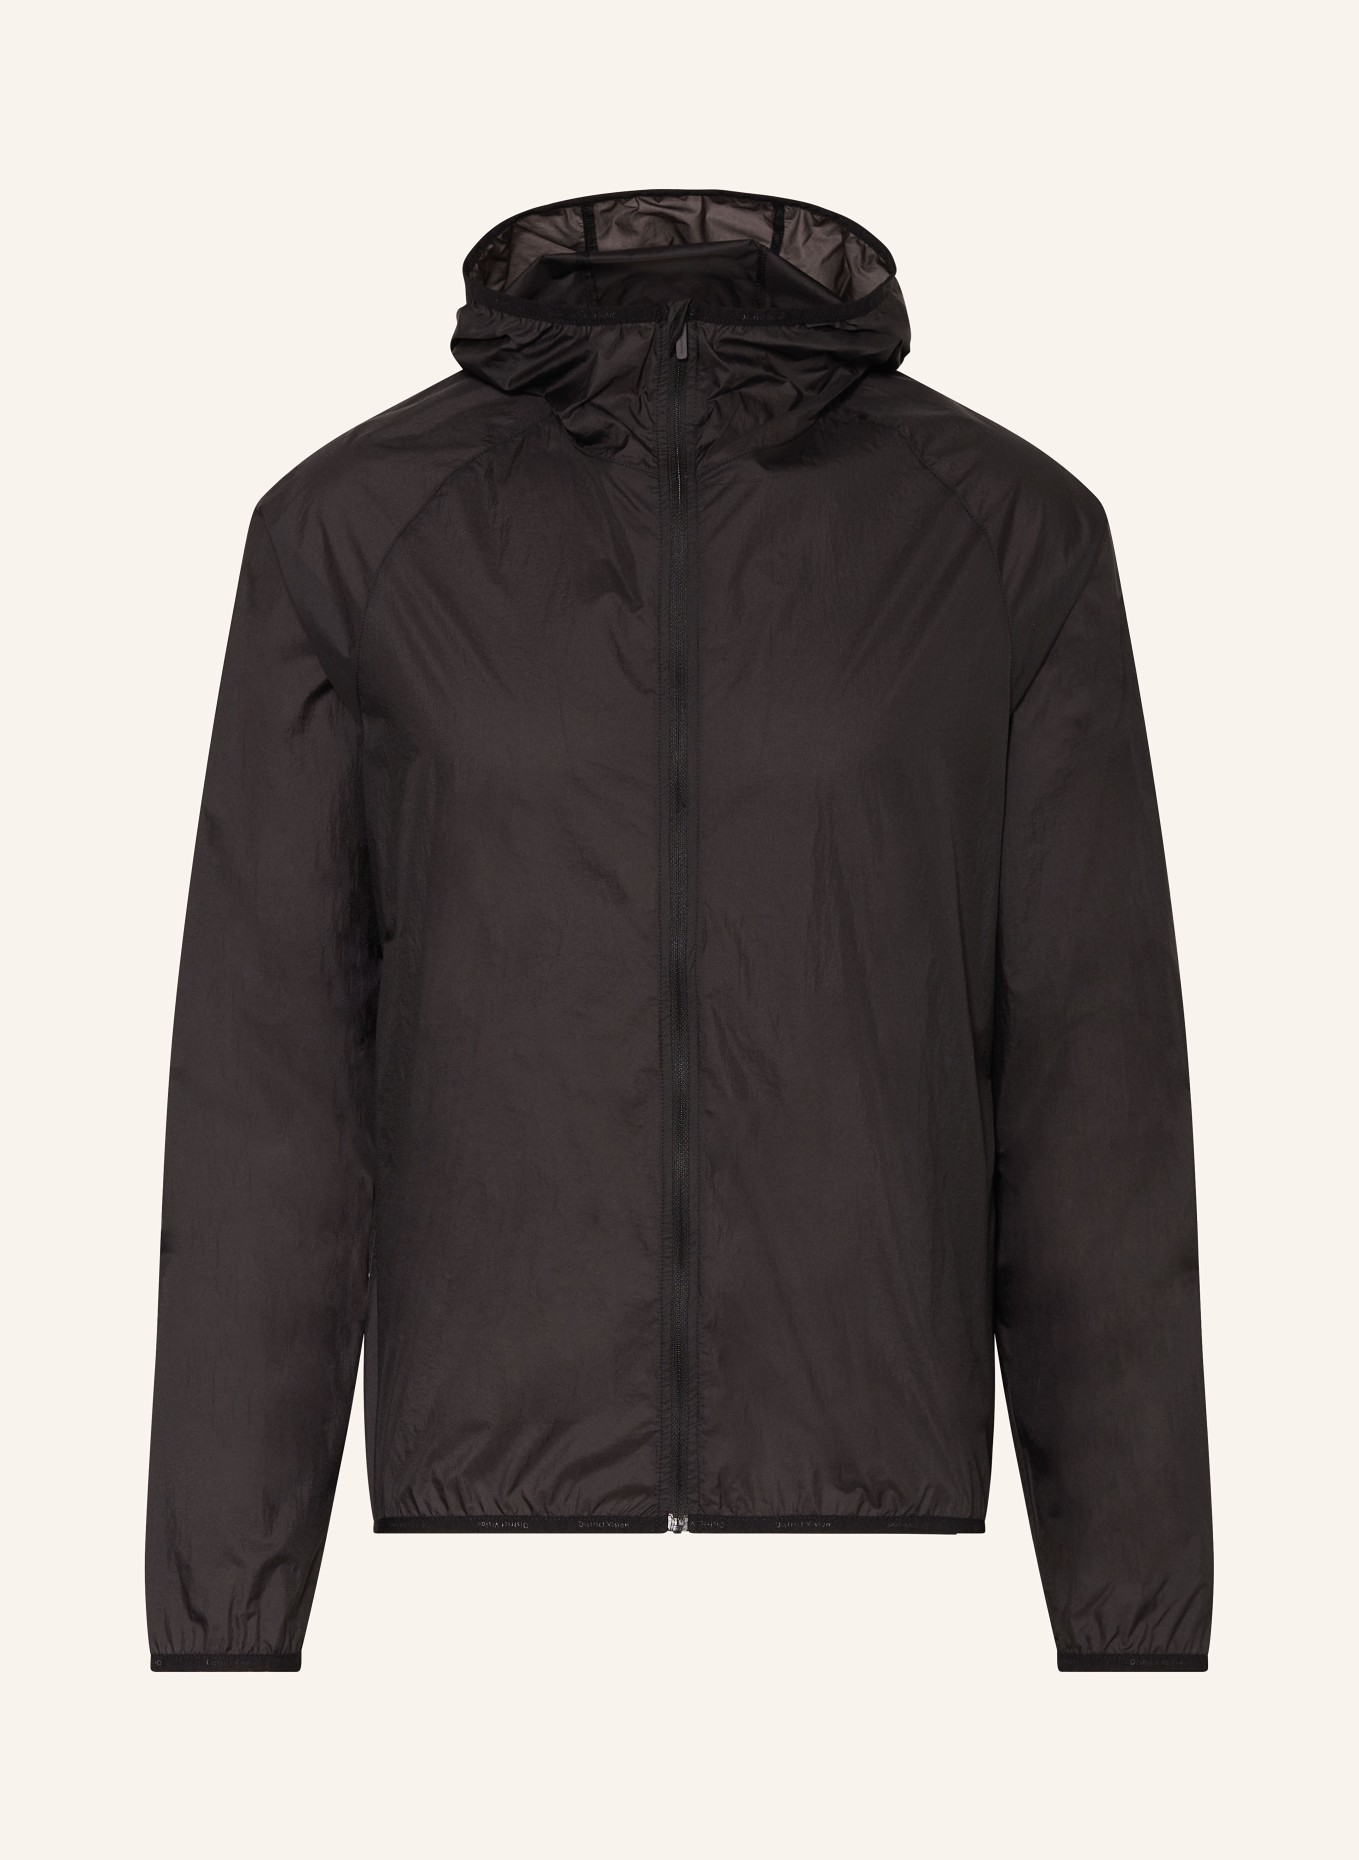 District Vision Running jacket, Color: BLACK (Image 1)